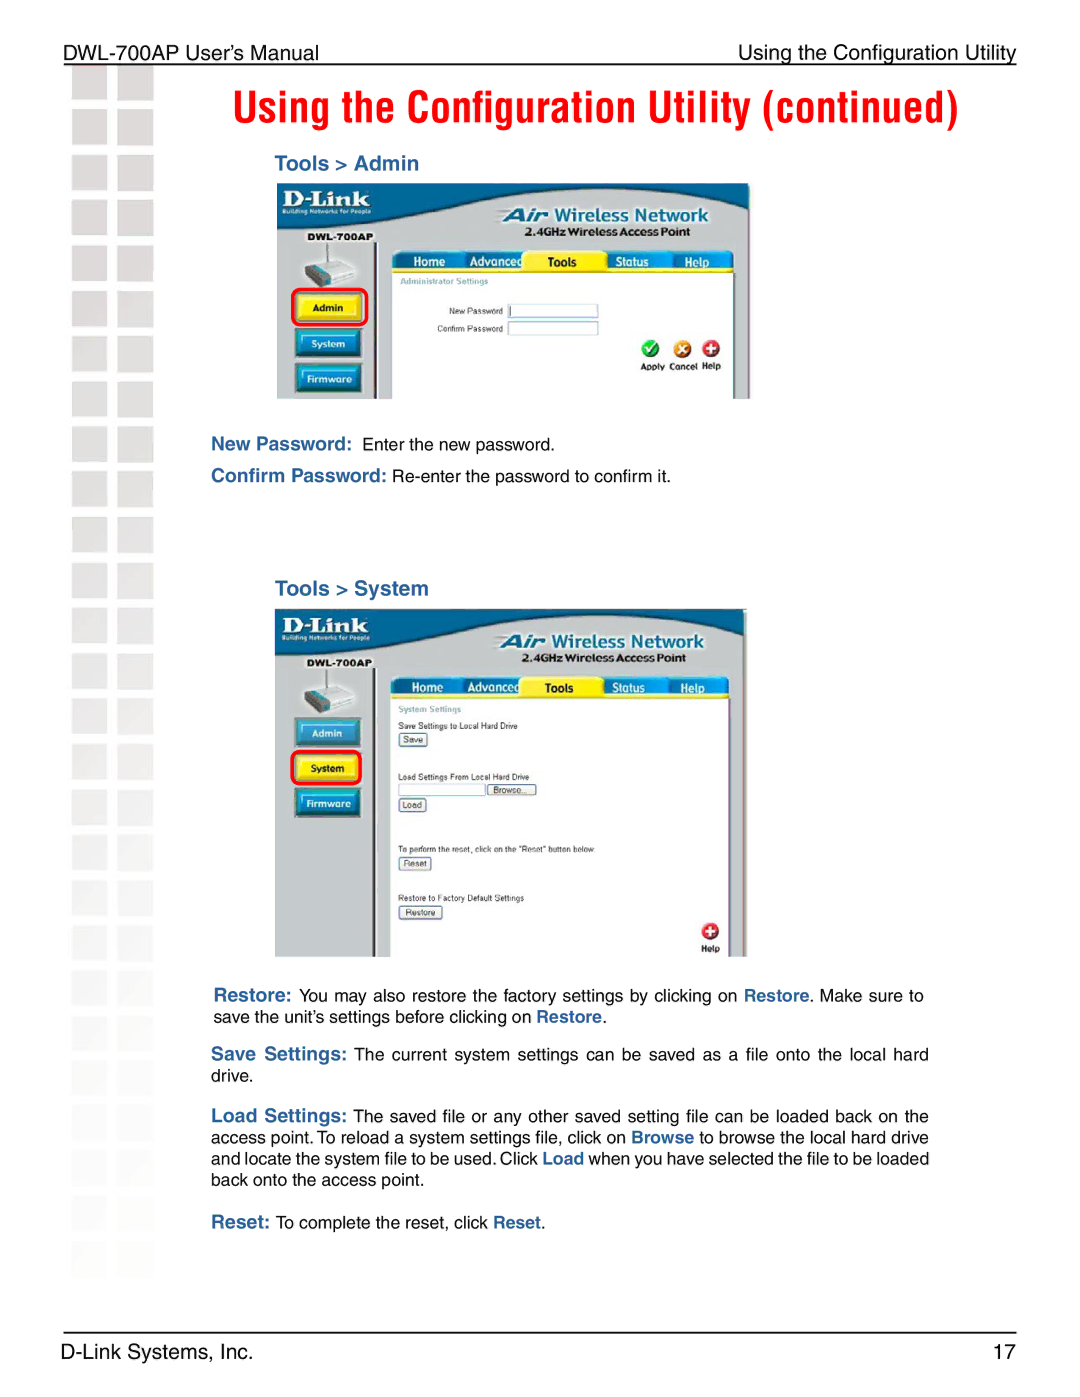 D-Link 700AP manual Tools Admin, Tools System 